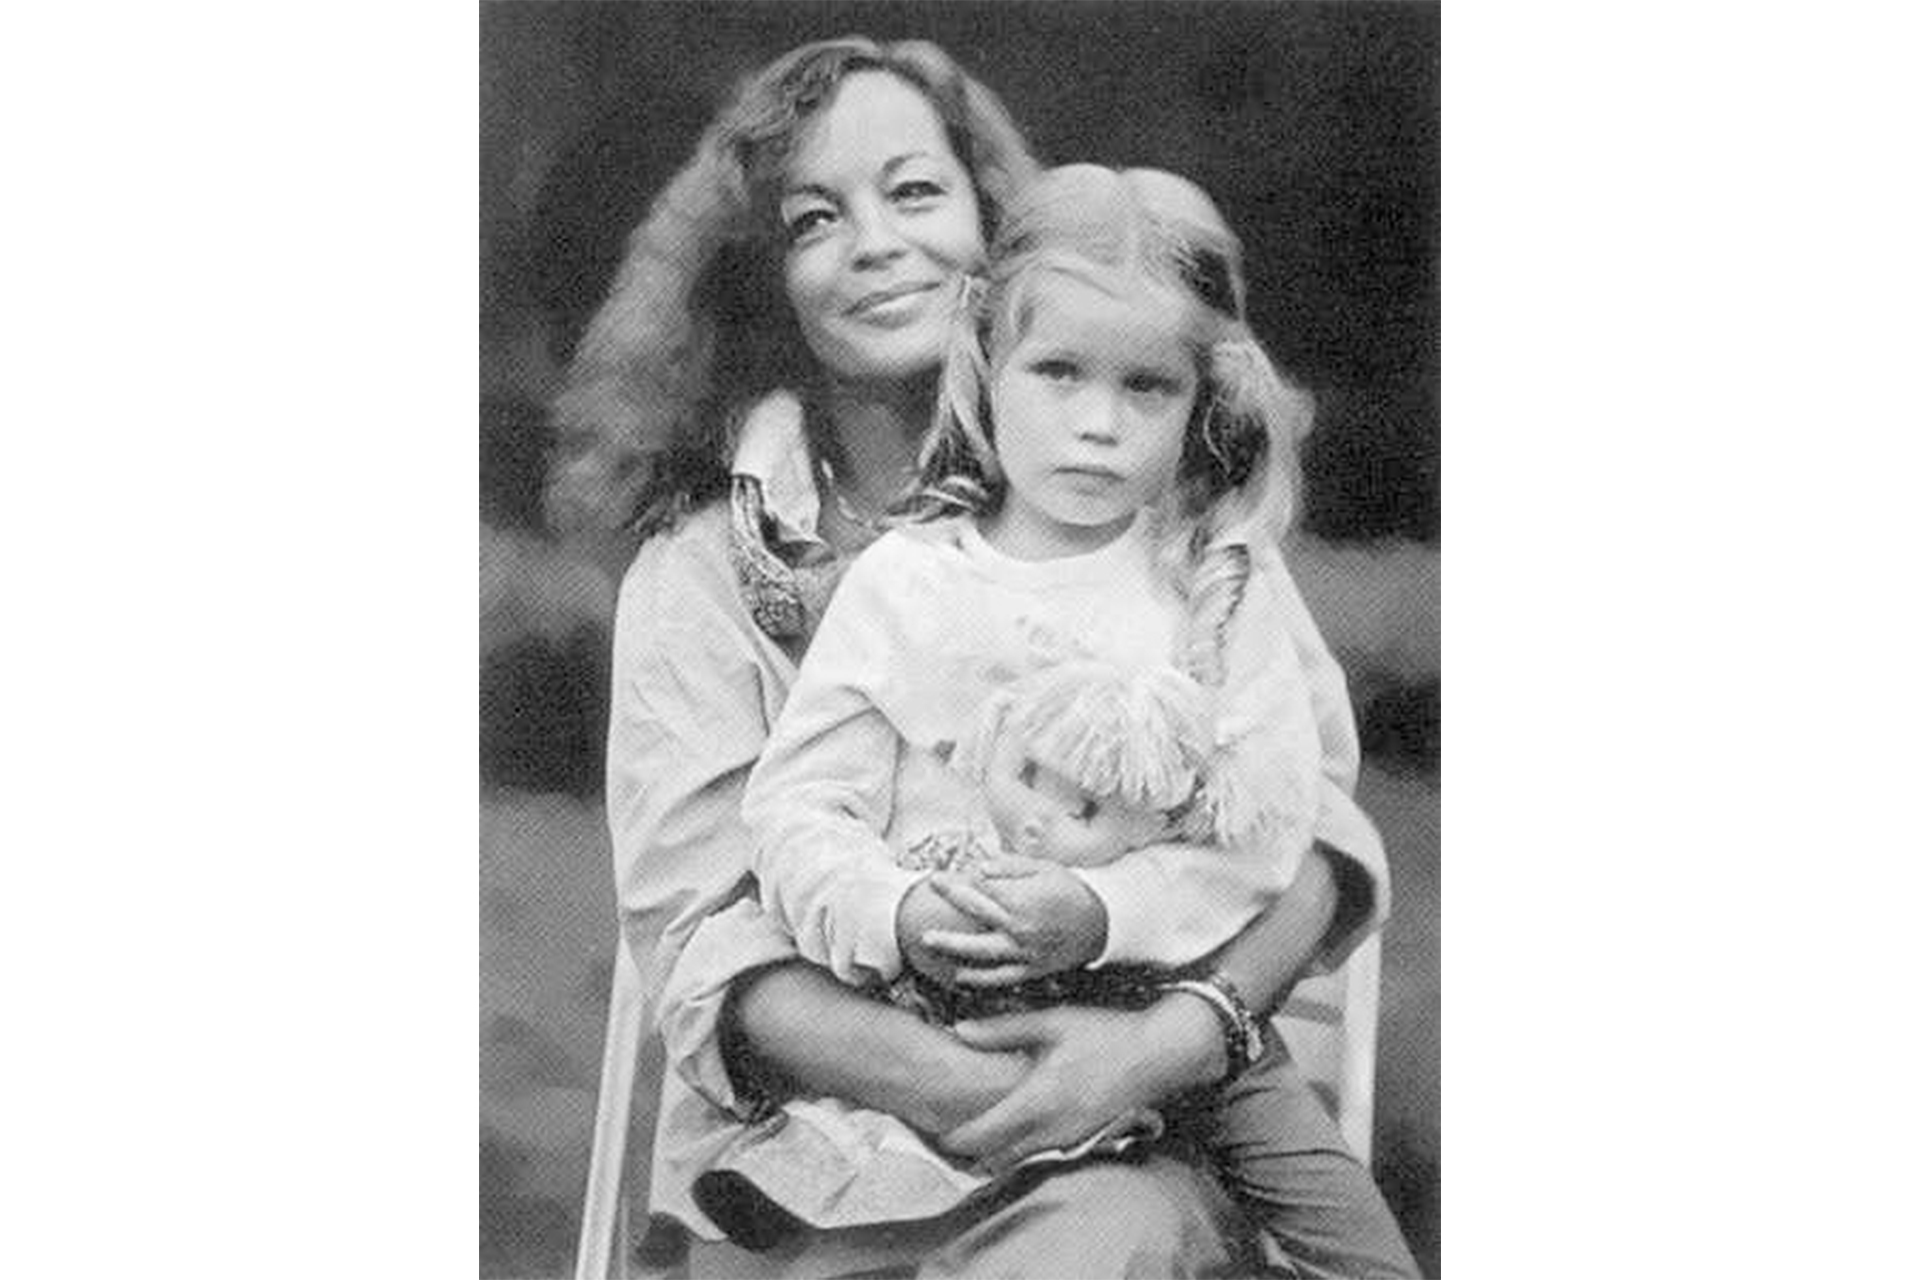 Роми Шнайдер с дочерью Сарой Бьязини. 1982 год